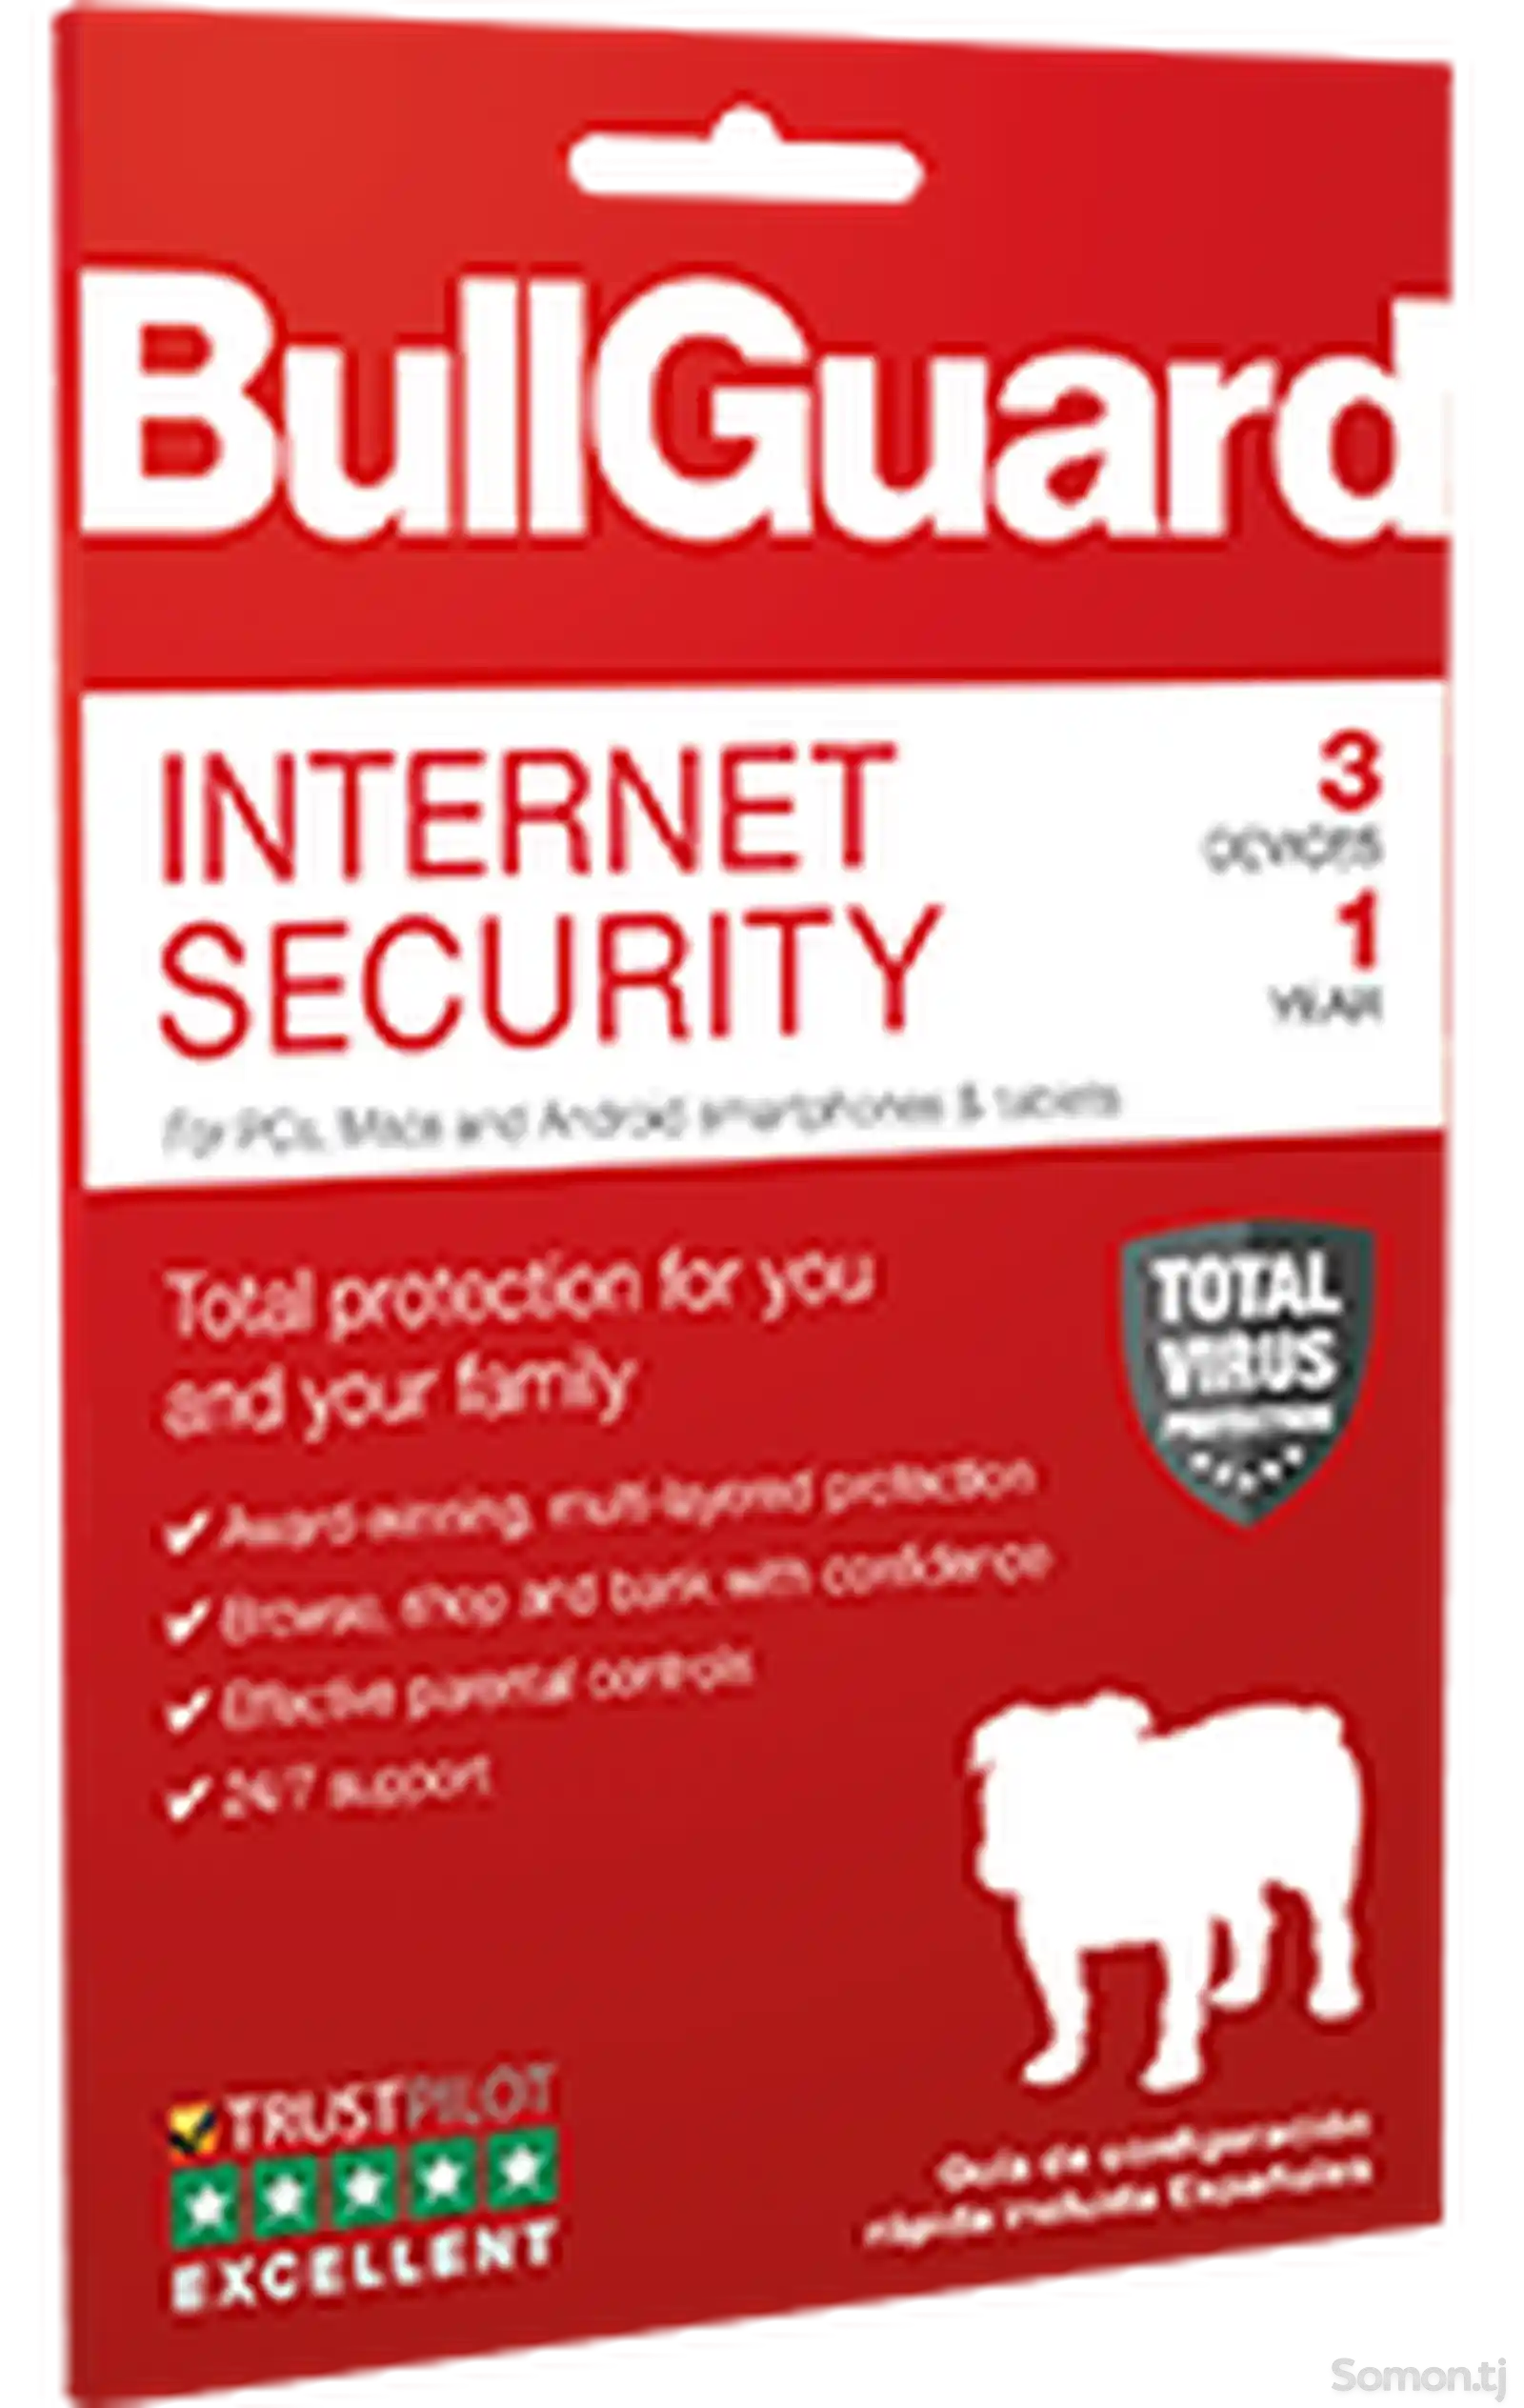 BullGuard Internet Security - иҷозатнома барои 1 роёна, 1 сол